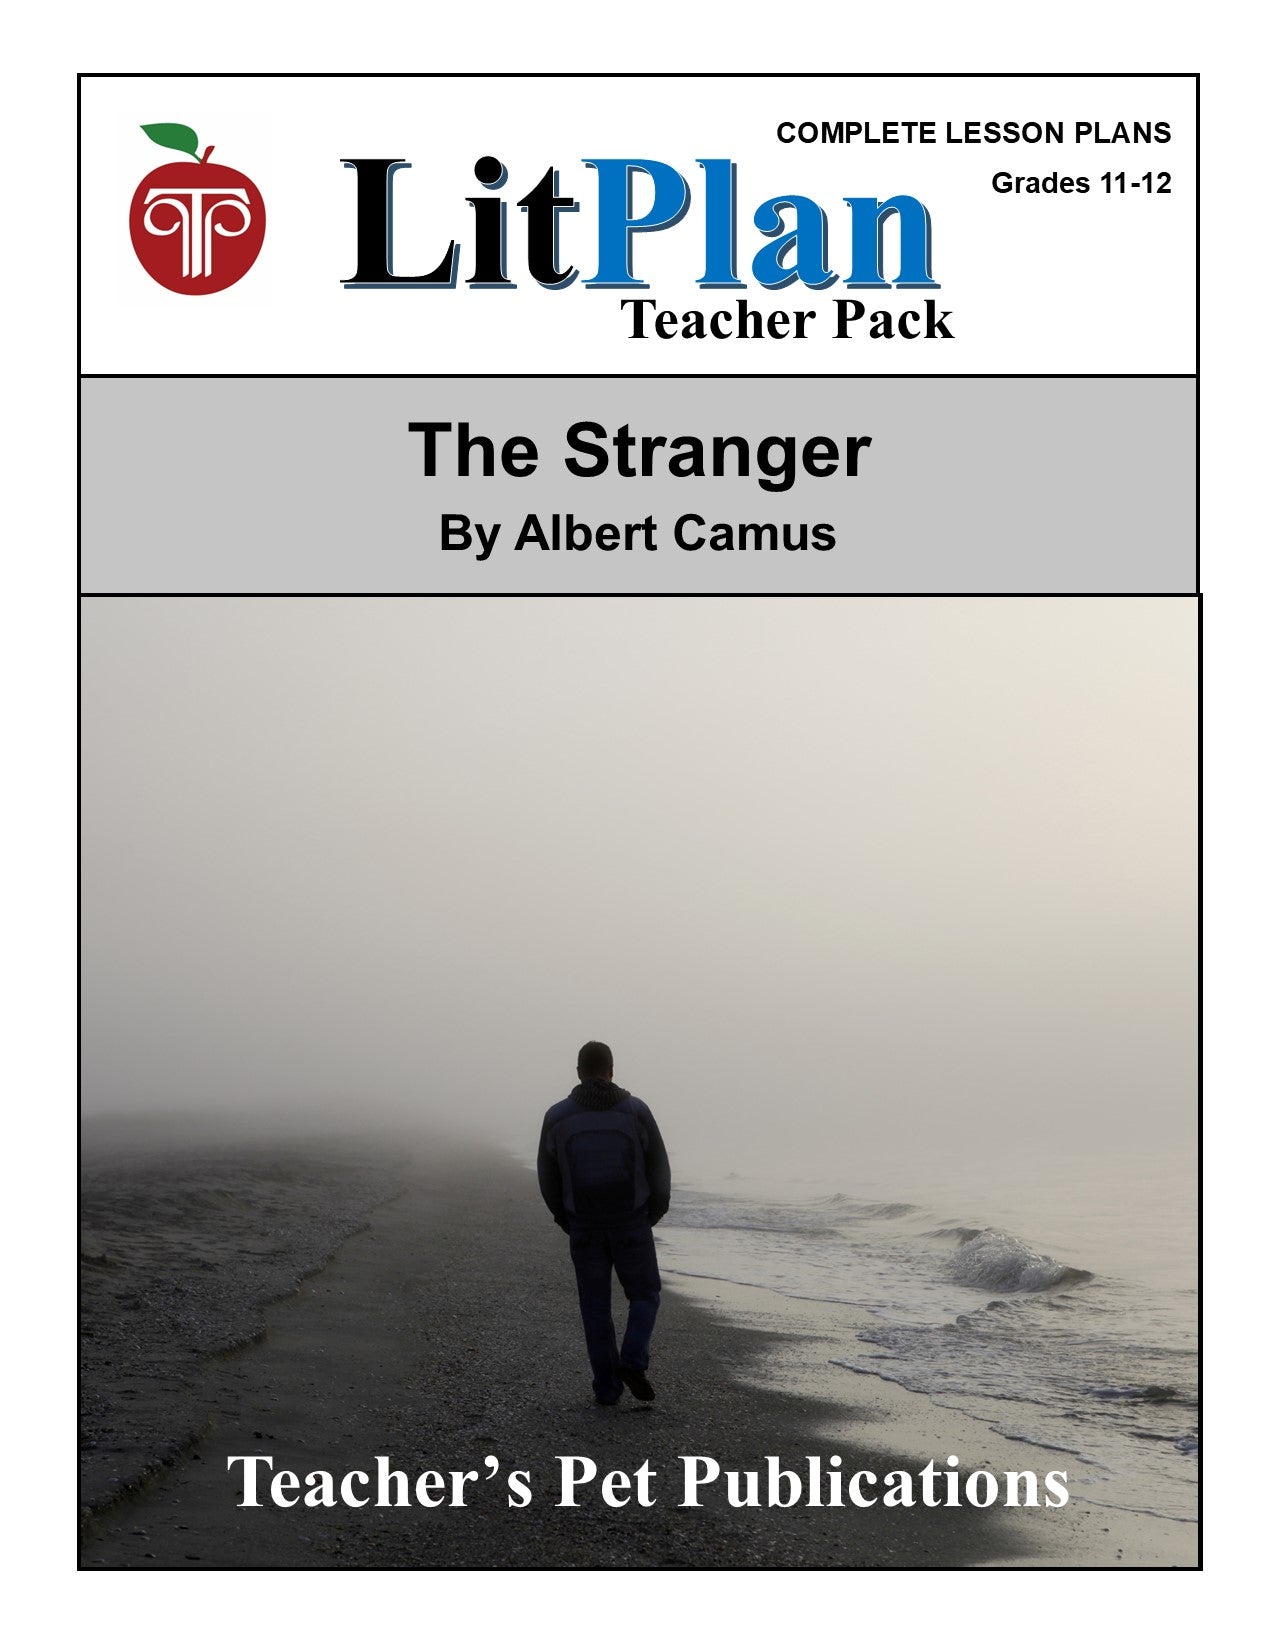 The Stranger: LitPlan Teacher Pack Grades 11-12